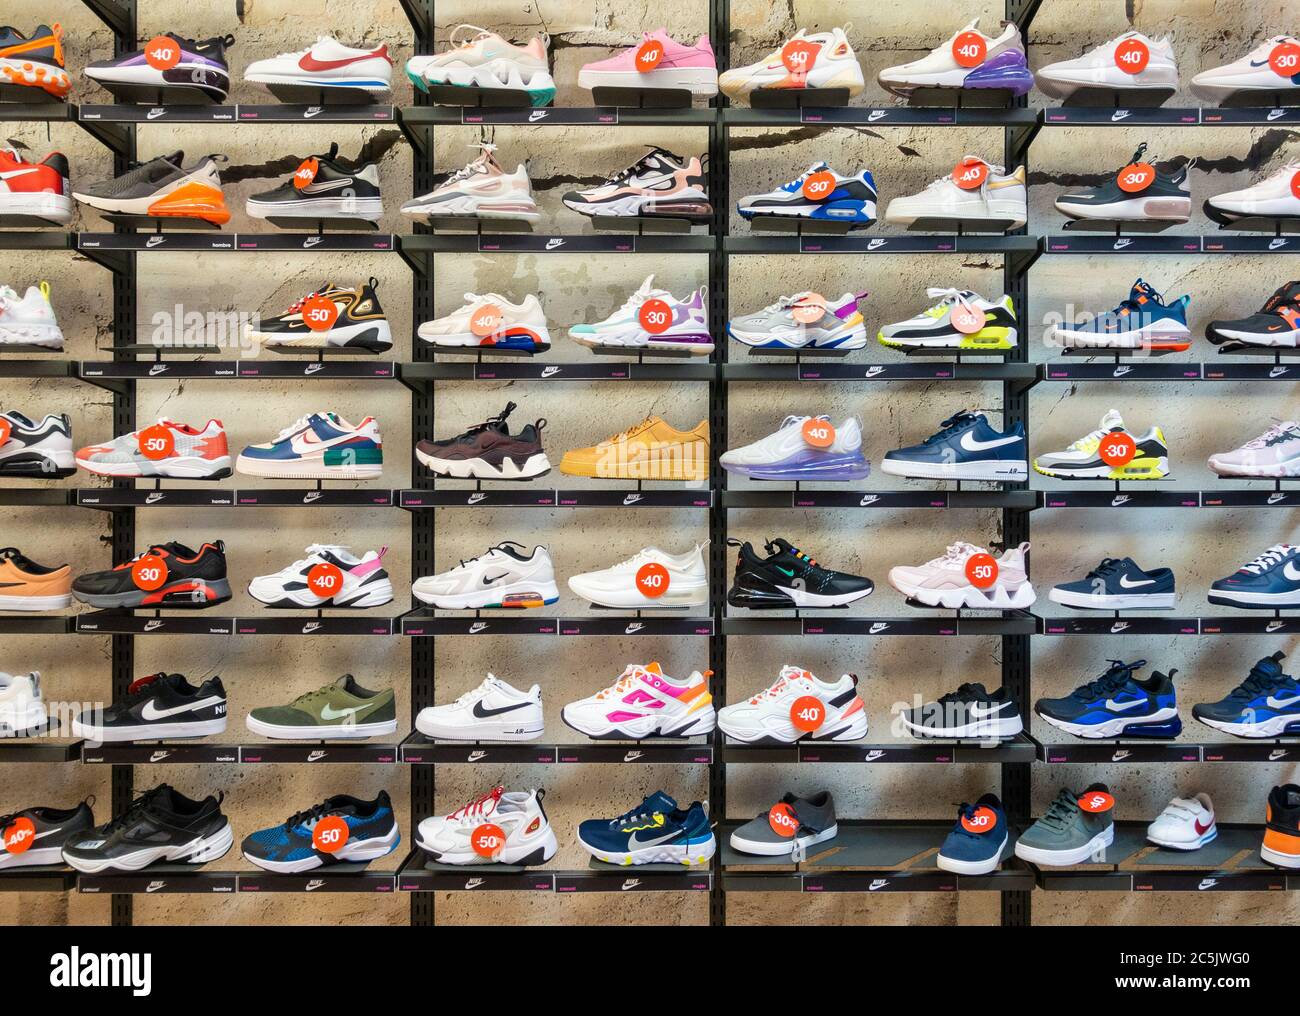 Scarpe Nike, scarpe casual, calzature, esposizione in negozio Foto stock -  Alamy